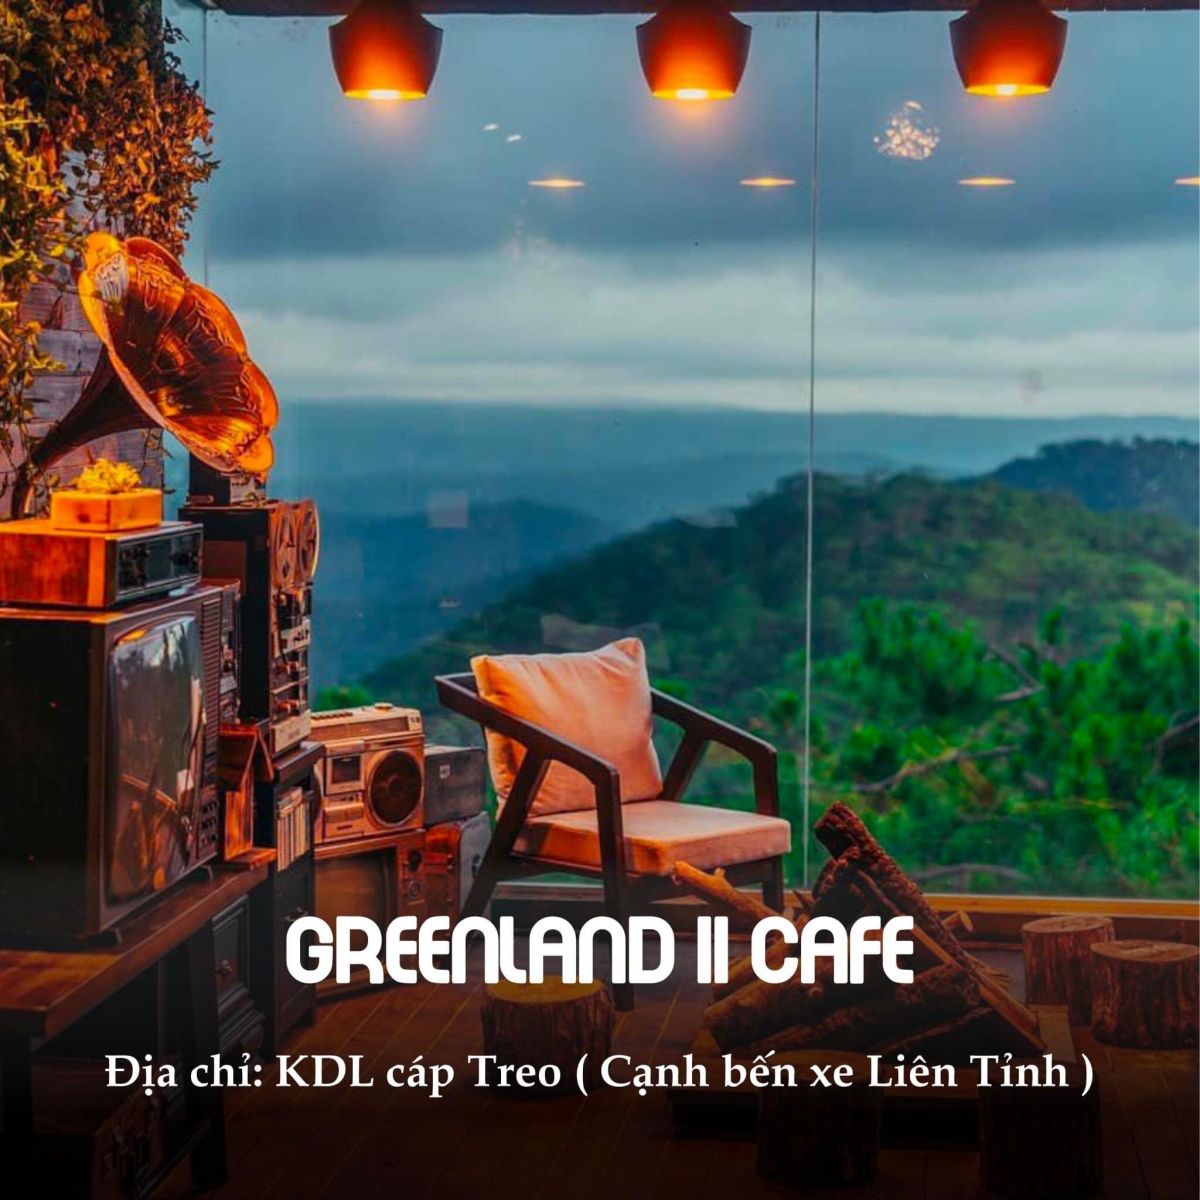 greenland II cafe da lat